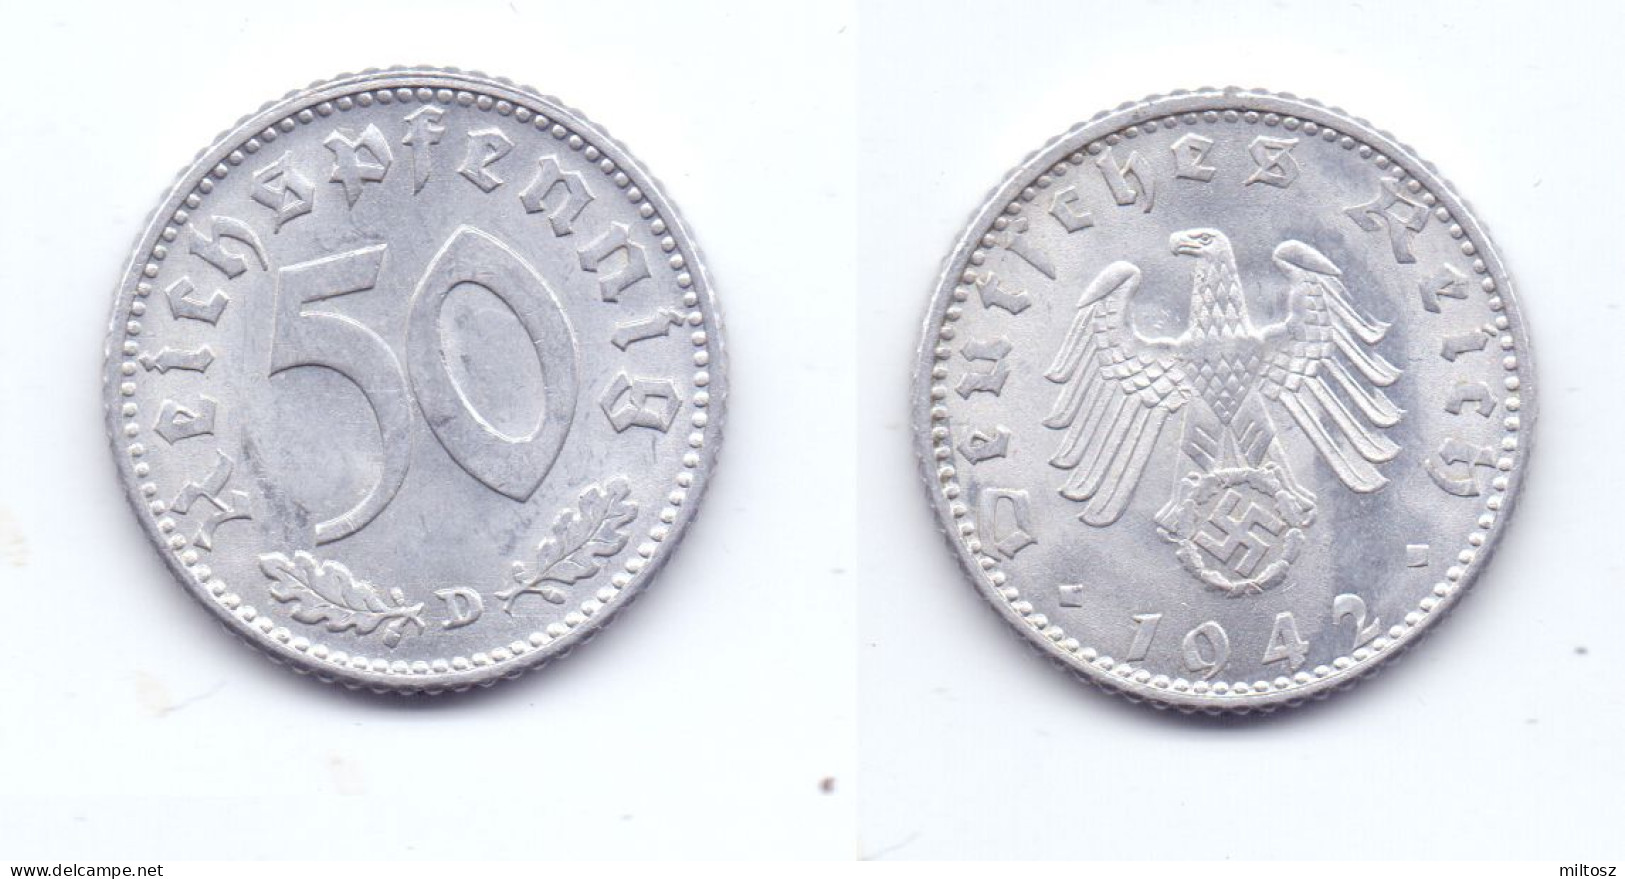 Germany 50 Reichspfennig 1942 D WWII Issue - 50 Reichspfennig